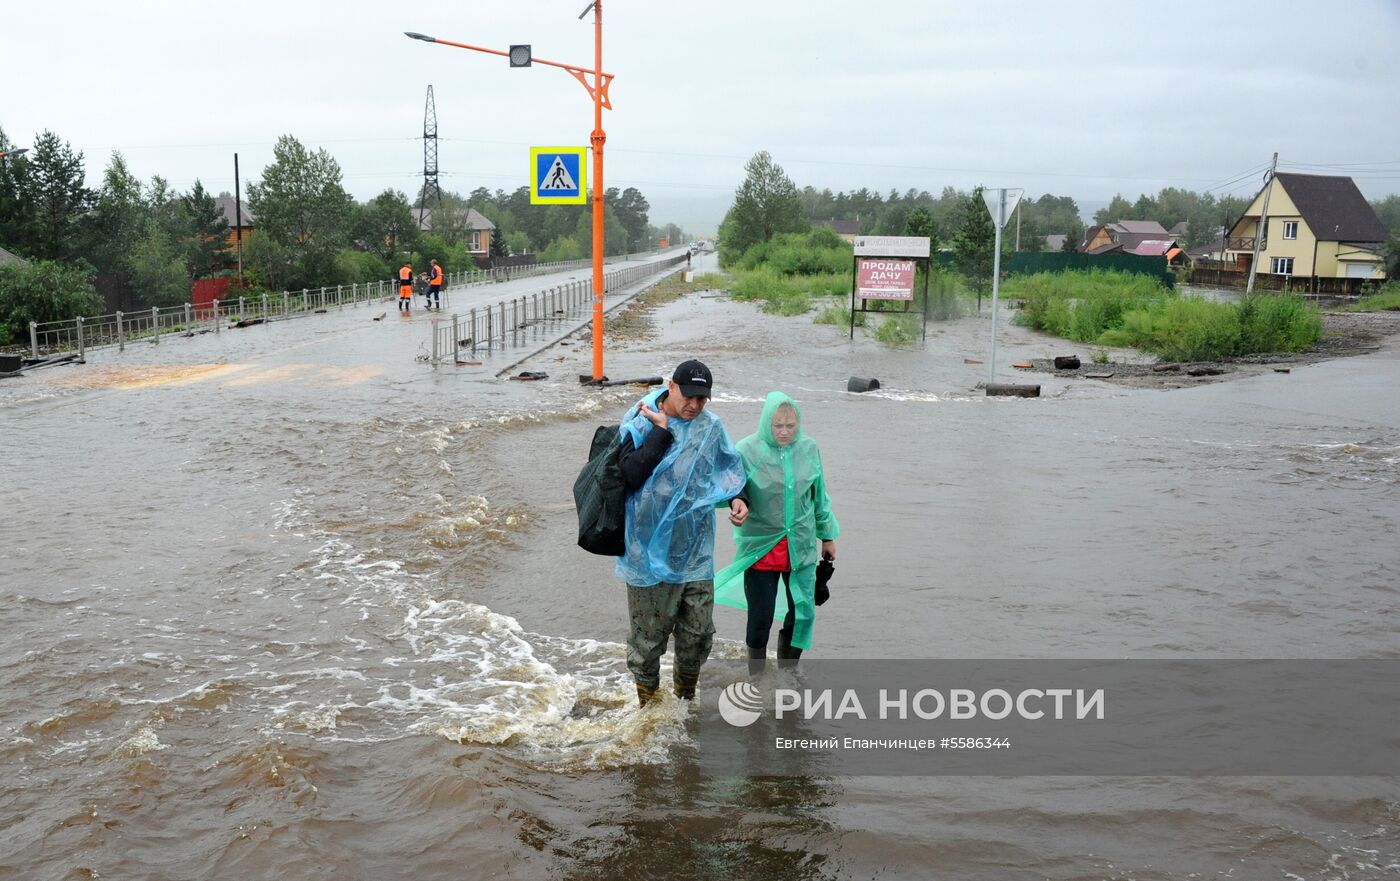 Пункты временного размещения для пострадавших от наводнения в Забайкалье